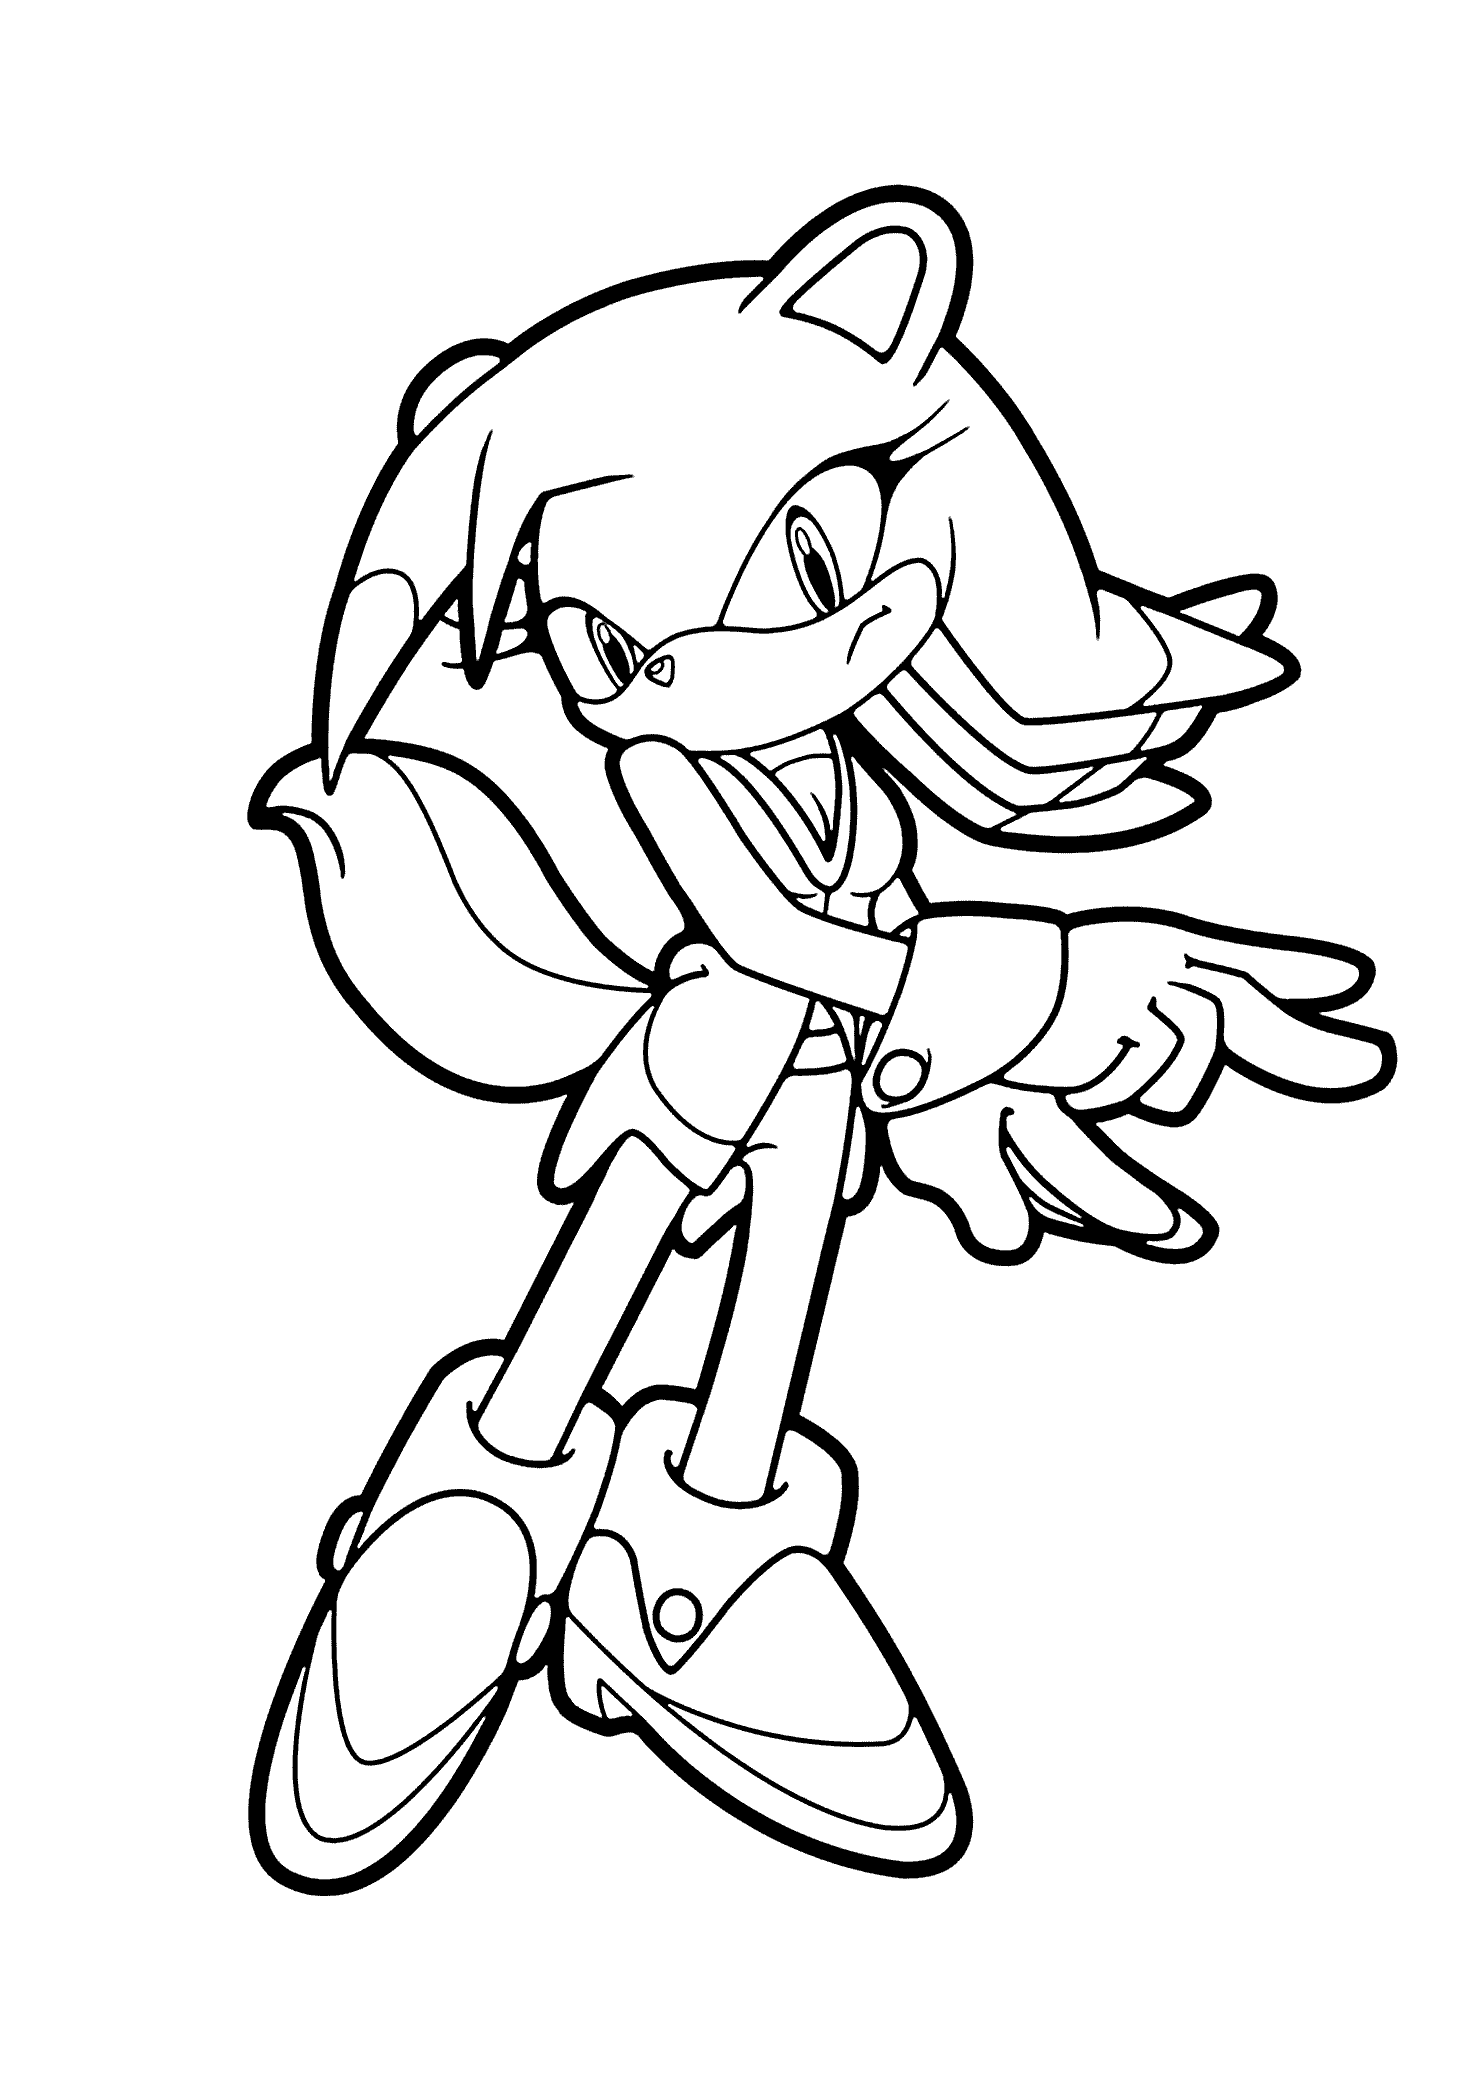 Dibujo de Sonic the Hedgehog para imprimir y colorear